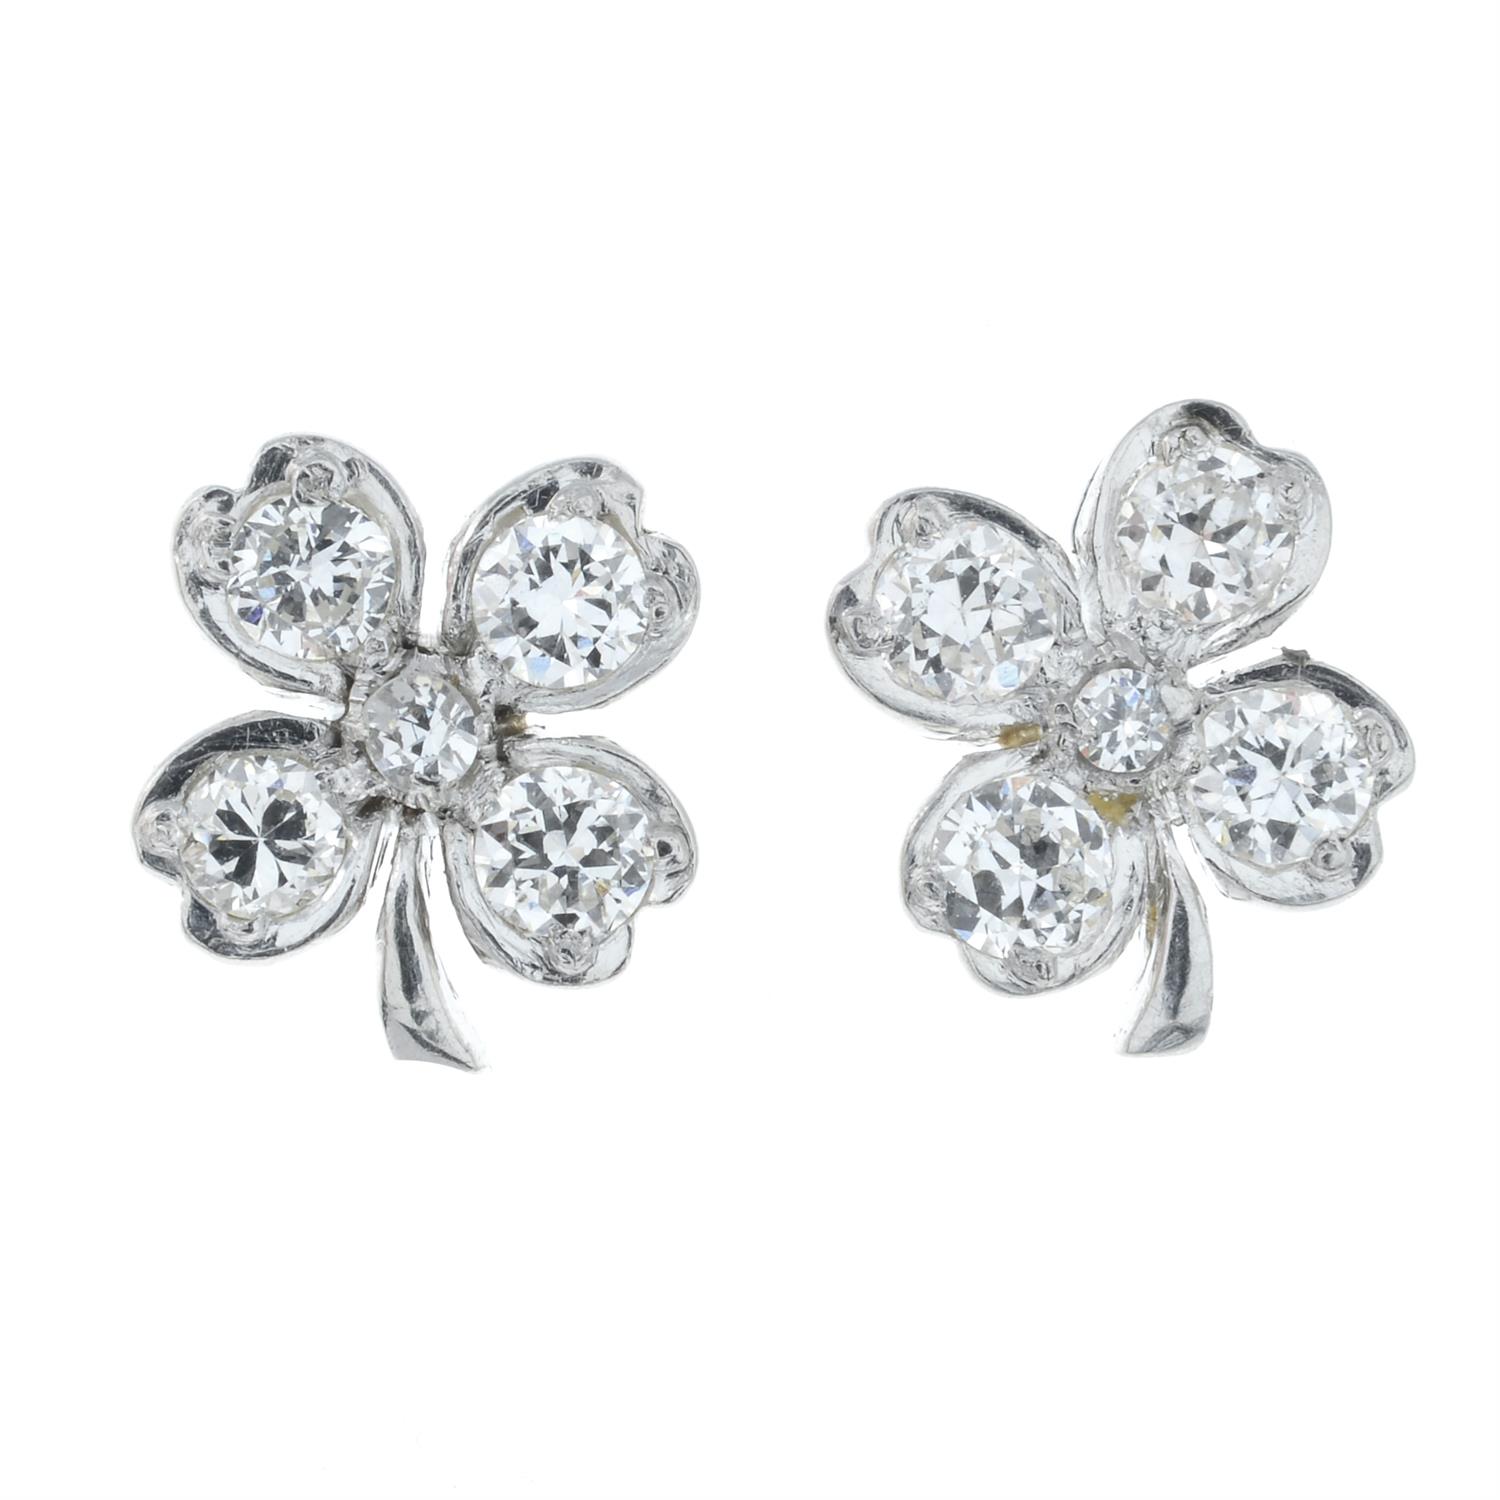 A pair of diamond four-leaf clover earrings.